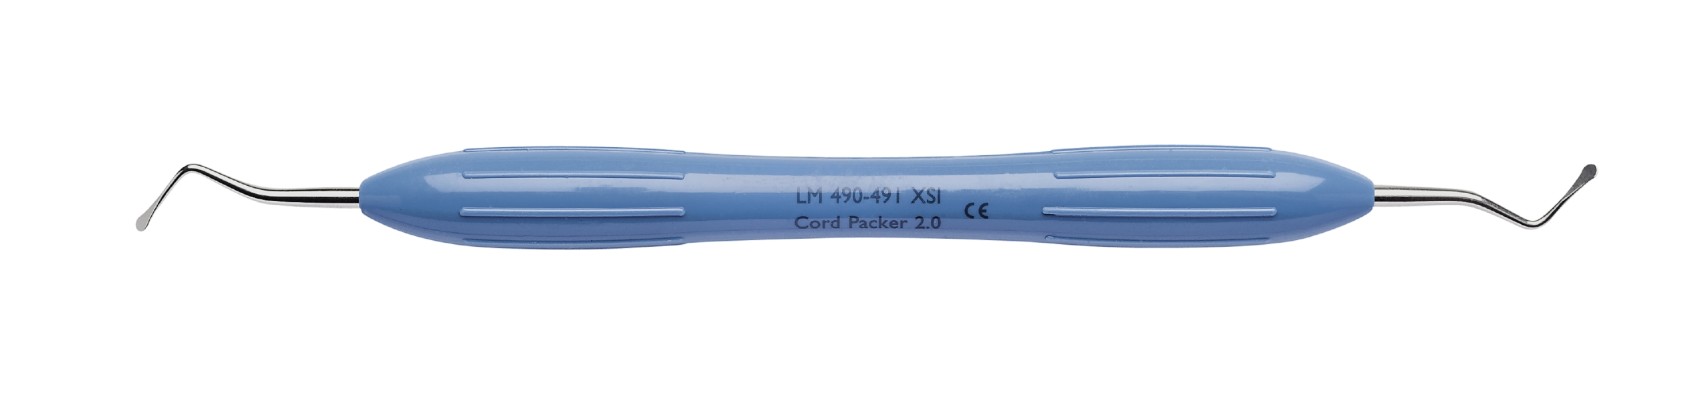 Инструмент для укладки ретракционной нити от 2.0 до 2.6 мм, LM 490-491, XSI